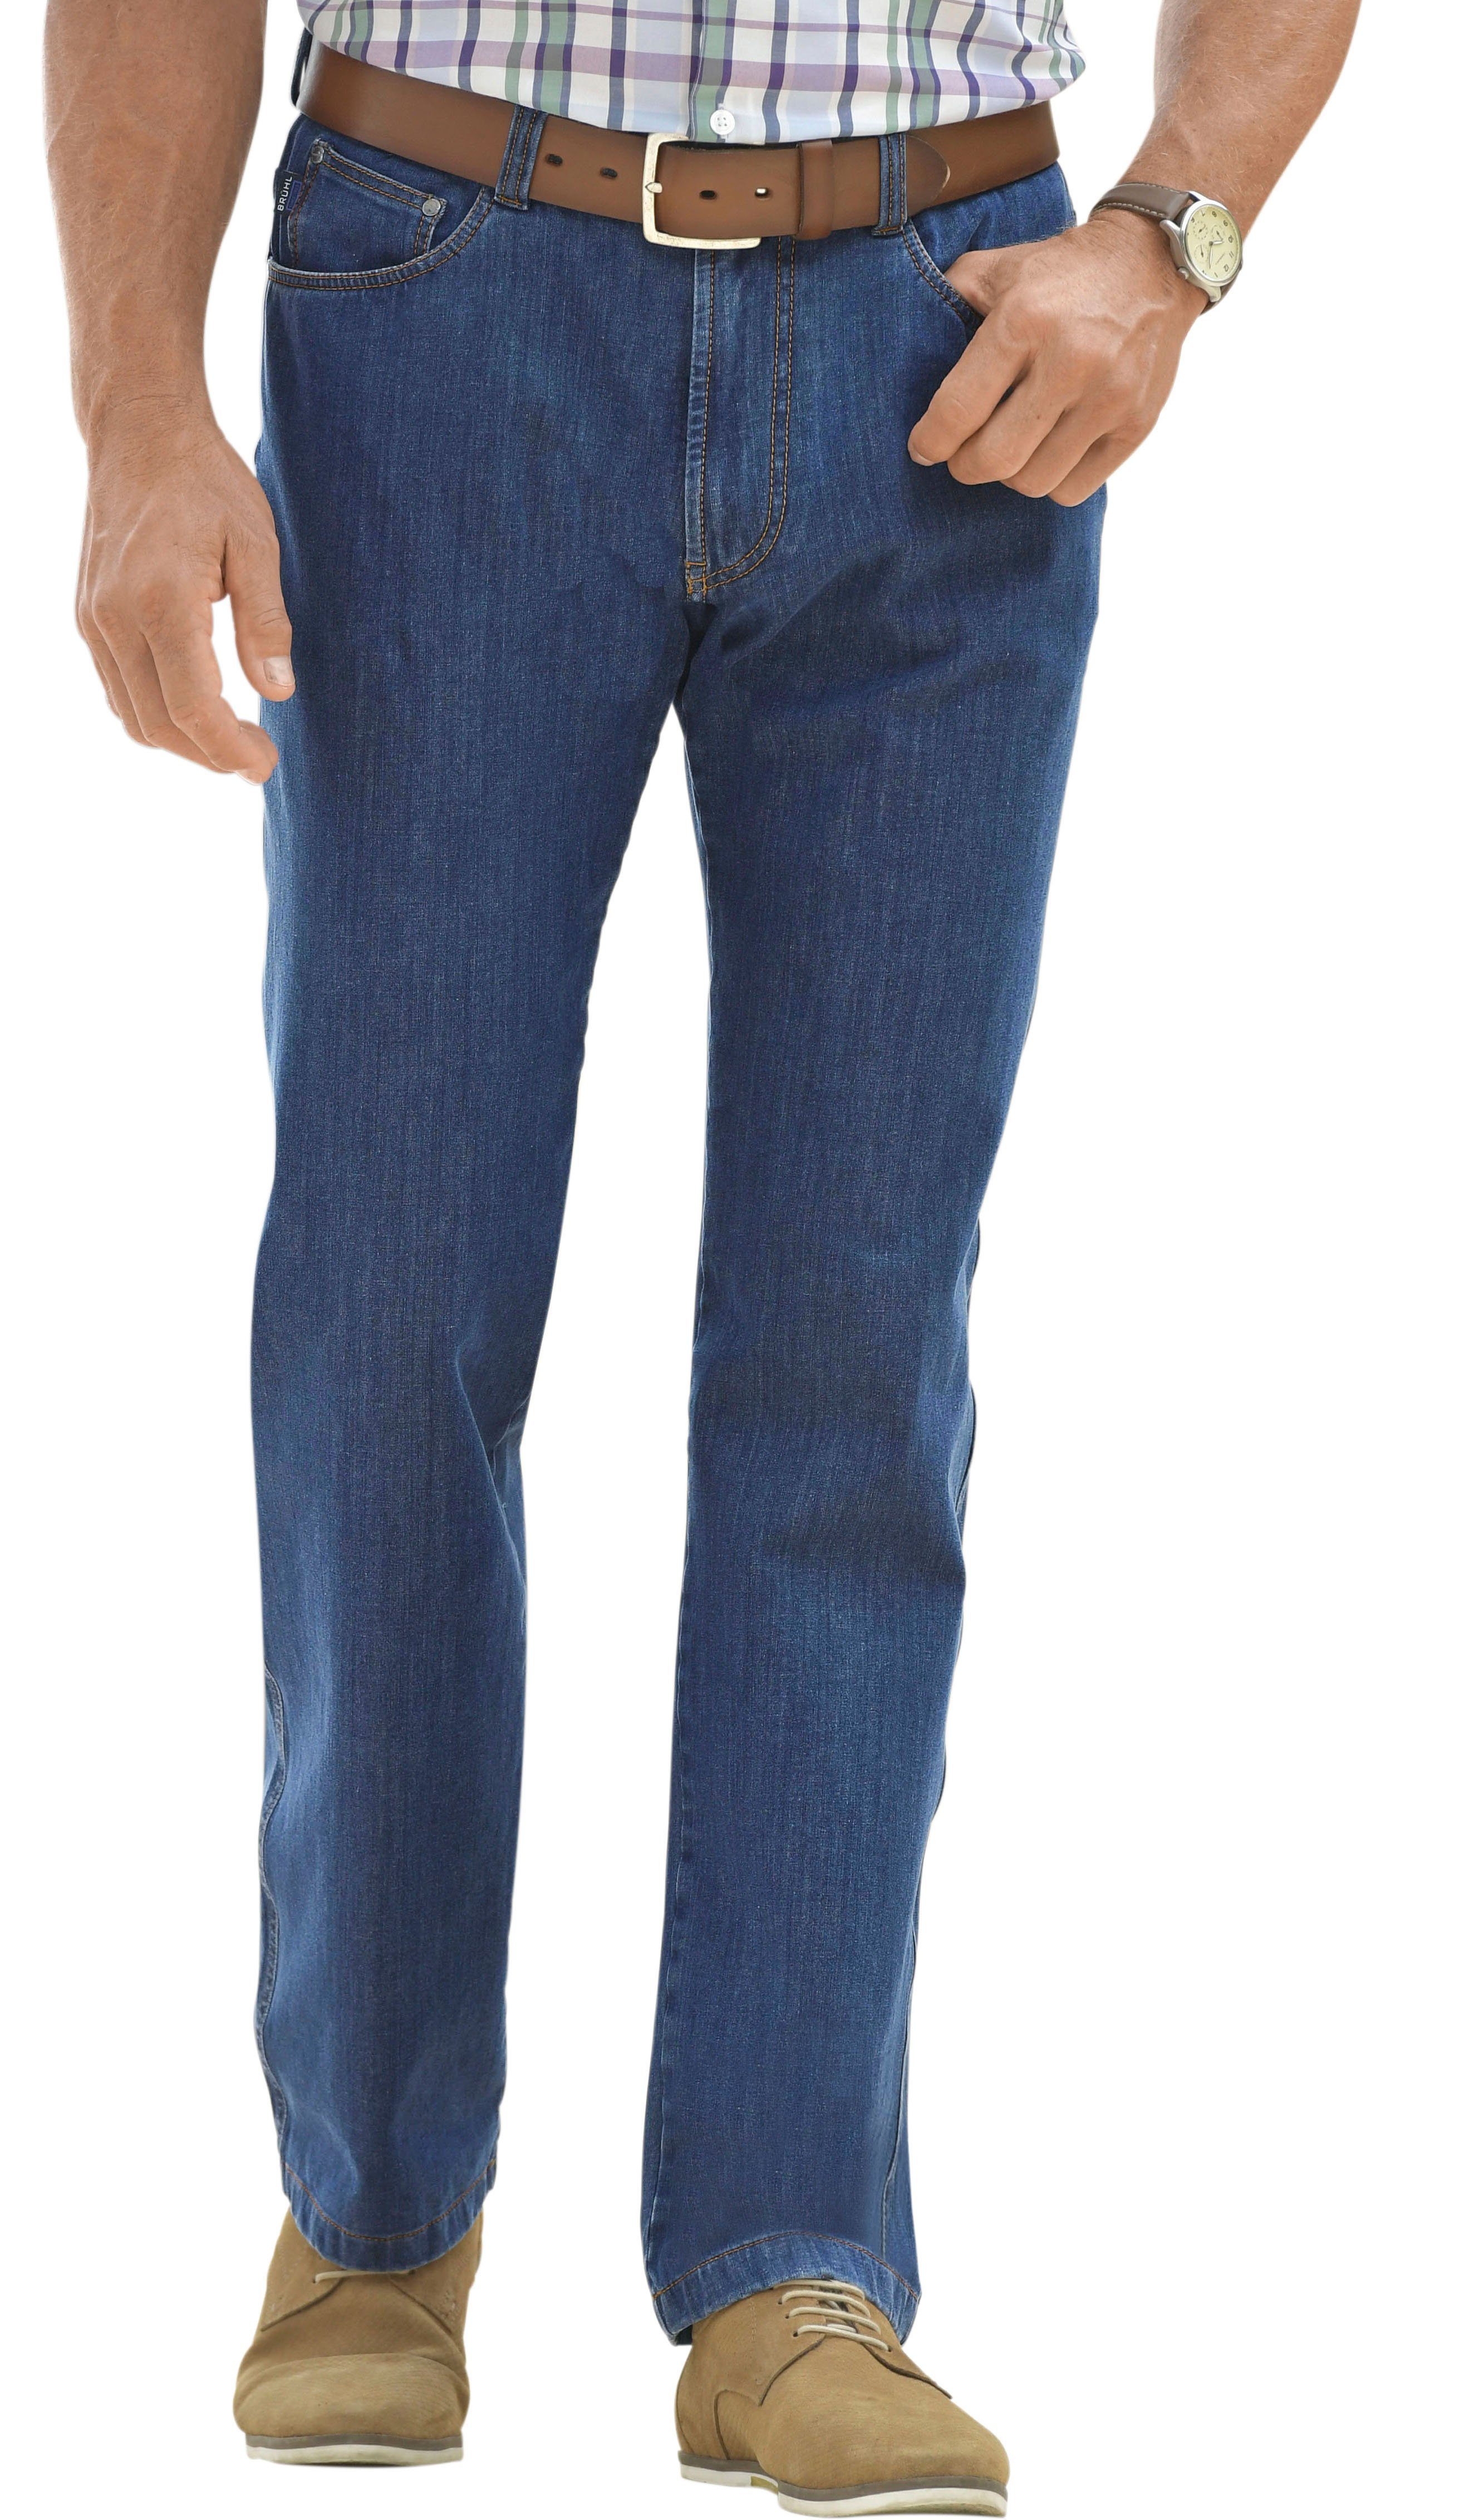 Otto - Marco Donati NU 15% KORTING: Marco Donati jeans in five-pocketsmodel